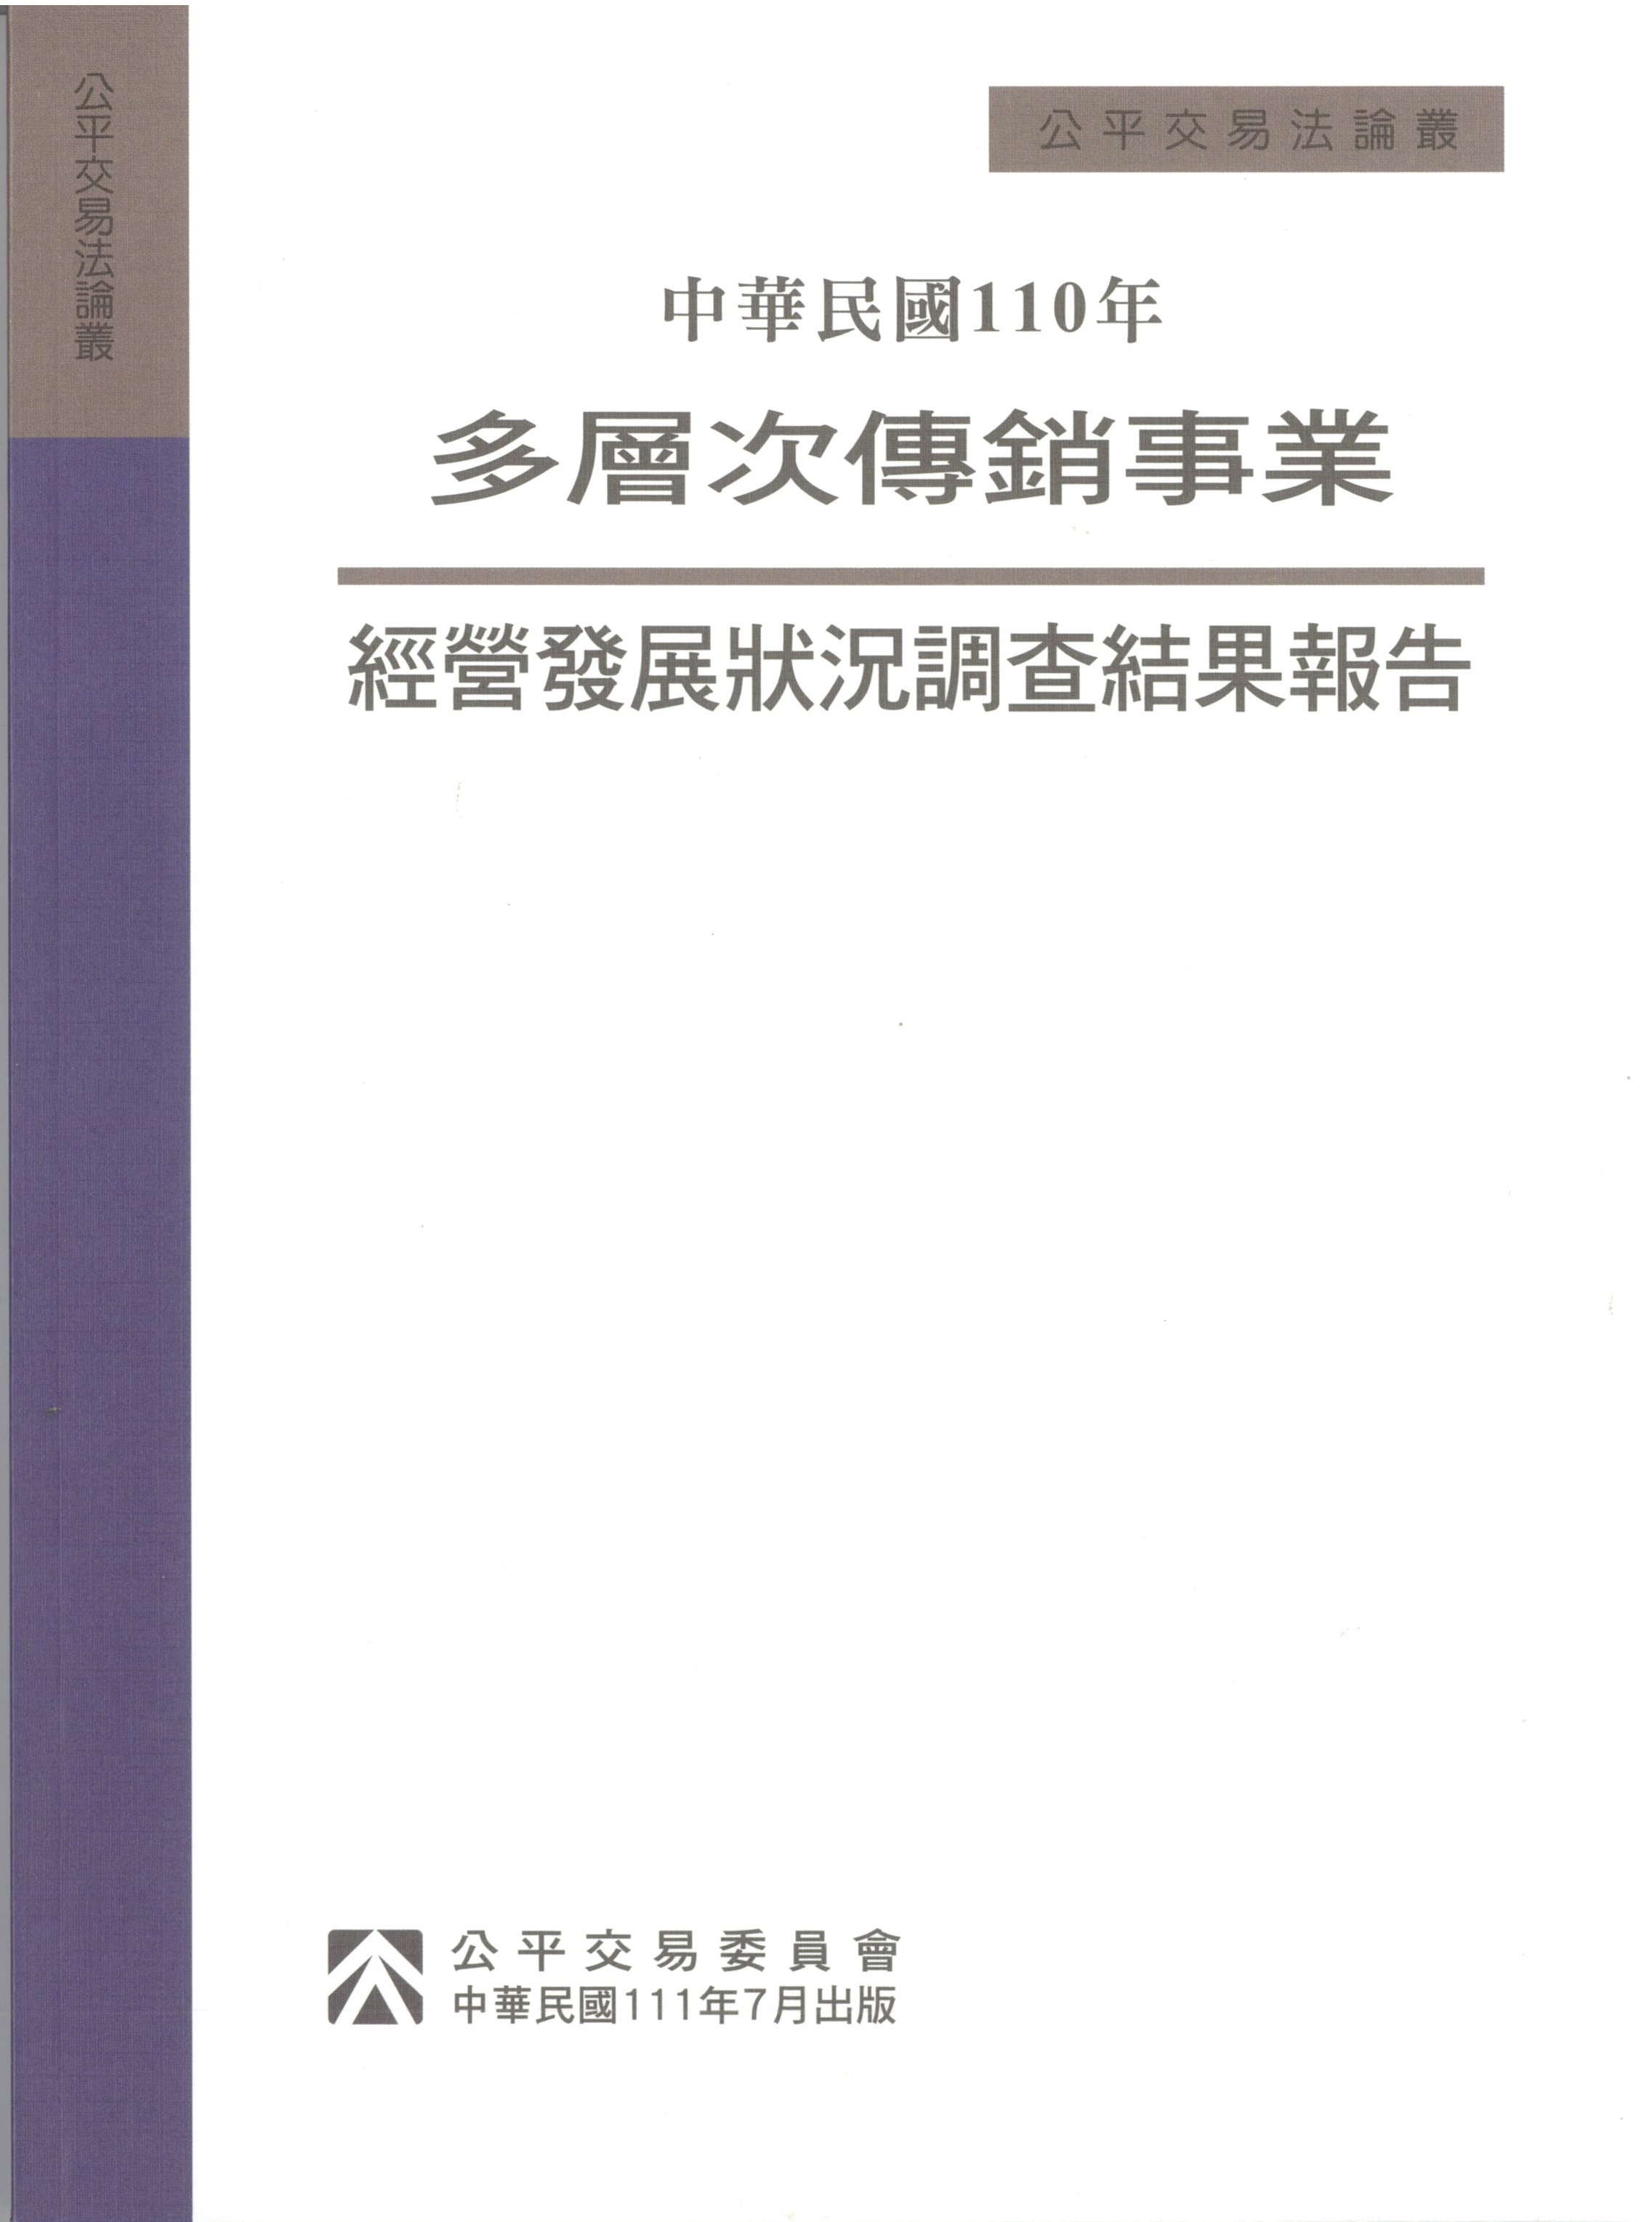 中華民國110年多層次傳銷事業經營發展狀況調查結果報告